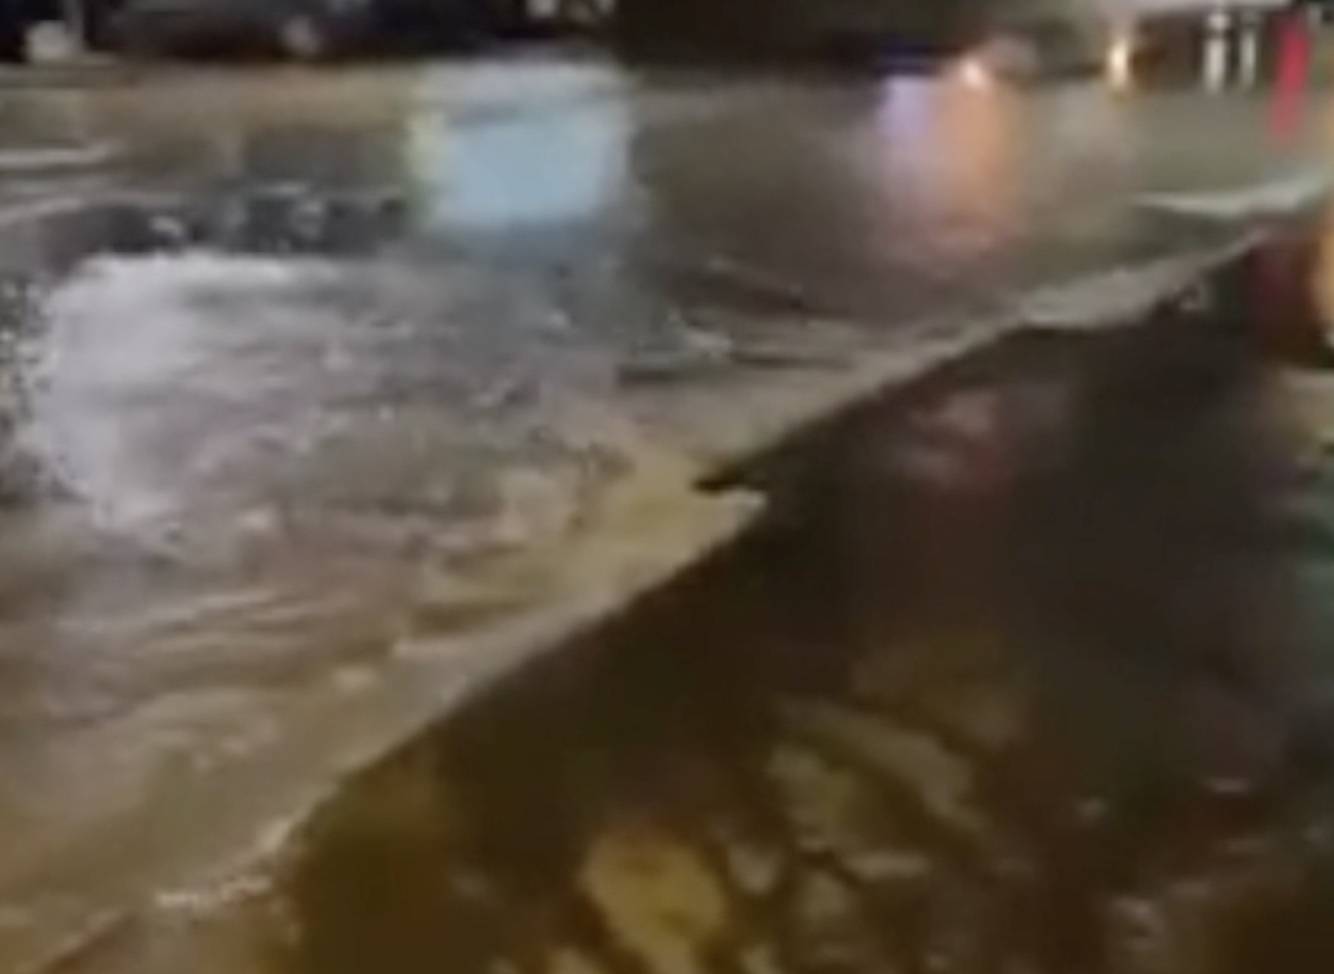 VIDEO Dio ulice u Varaždinu pod vodom: 'Pukla vodovodna cijev'